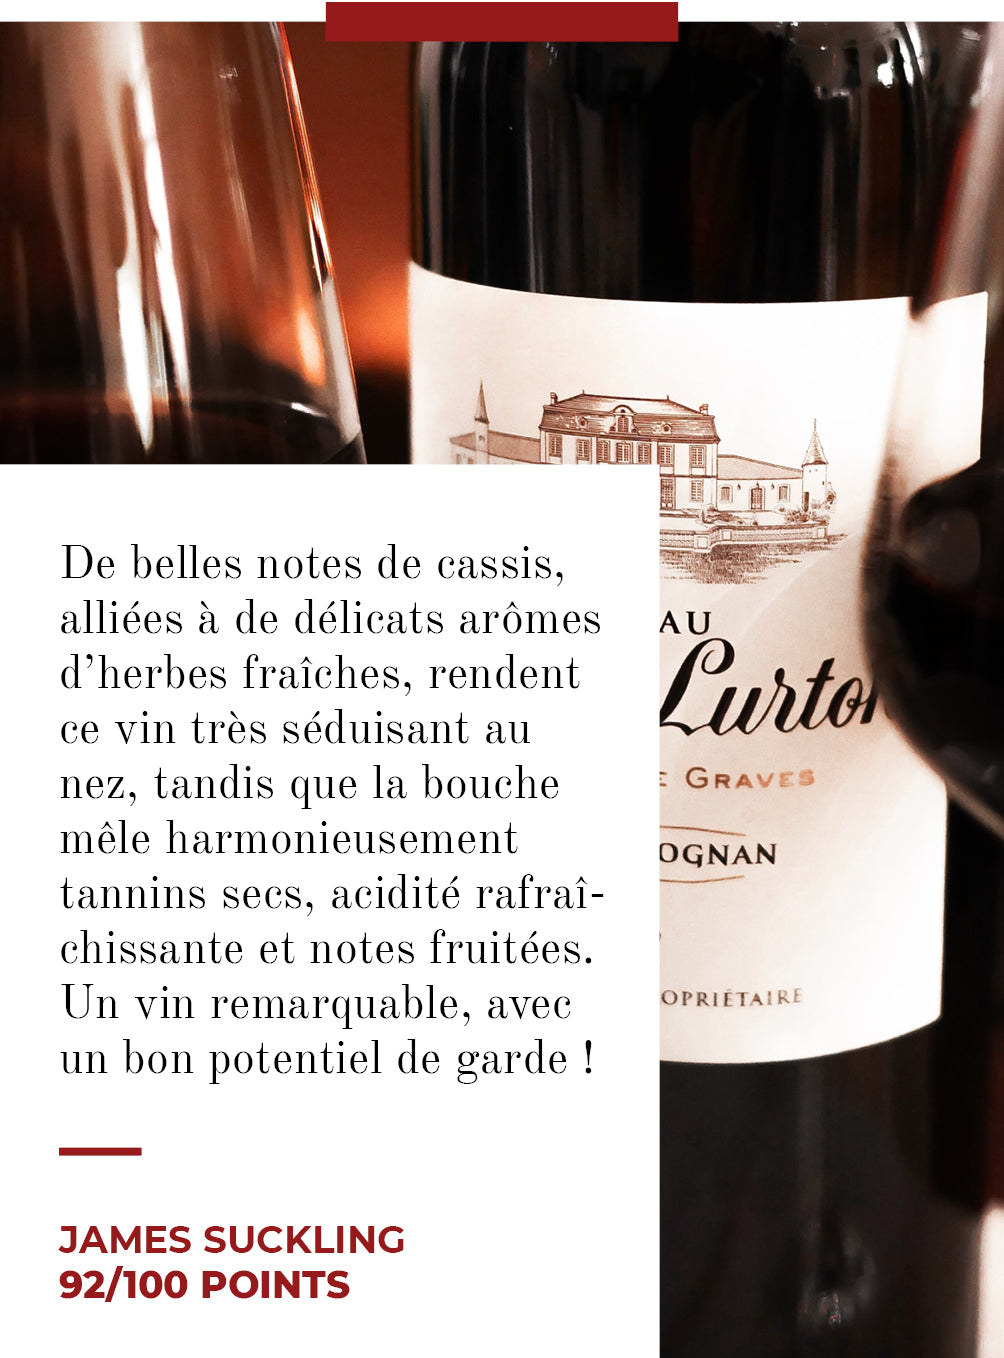 CHÂTEAU COUHINS-LURTON Rouge - Pessac-Léognan - 2014 - 3 bouteilles x 30,50 €